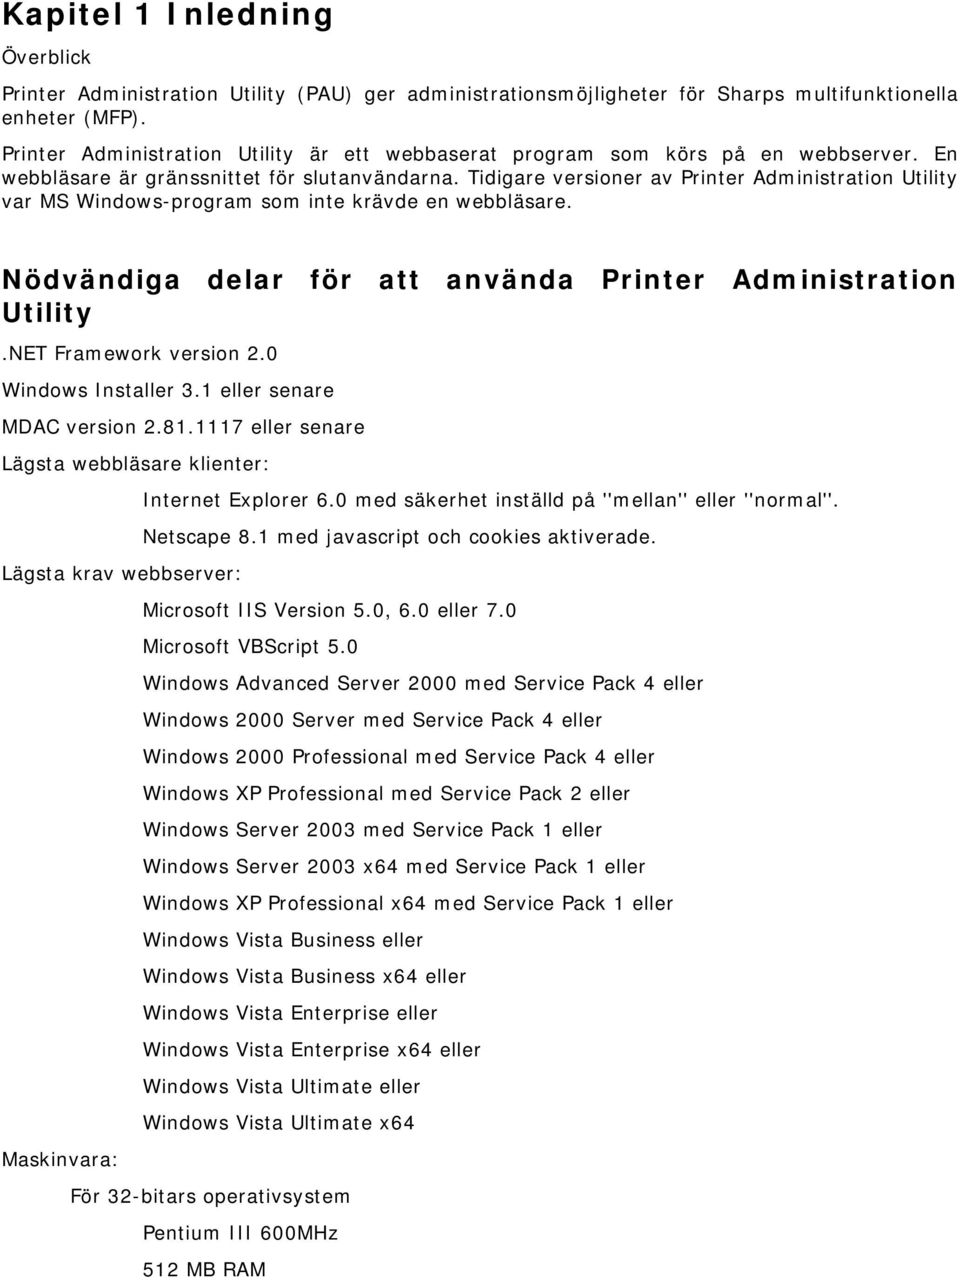 Tidigare versioner av Printer Administration Utility var MS Windows-program som inte krävde en webbläsare. Nödvändiga delar för att använda Printer Administration Utility.NET Framework version 2.